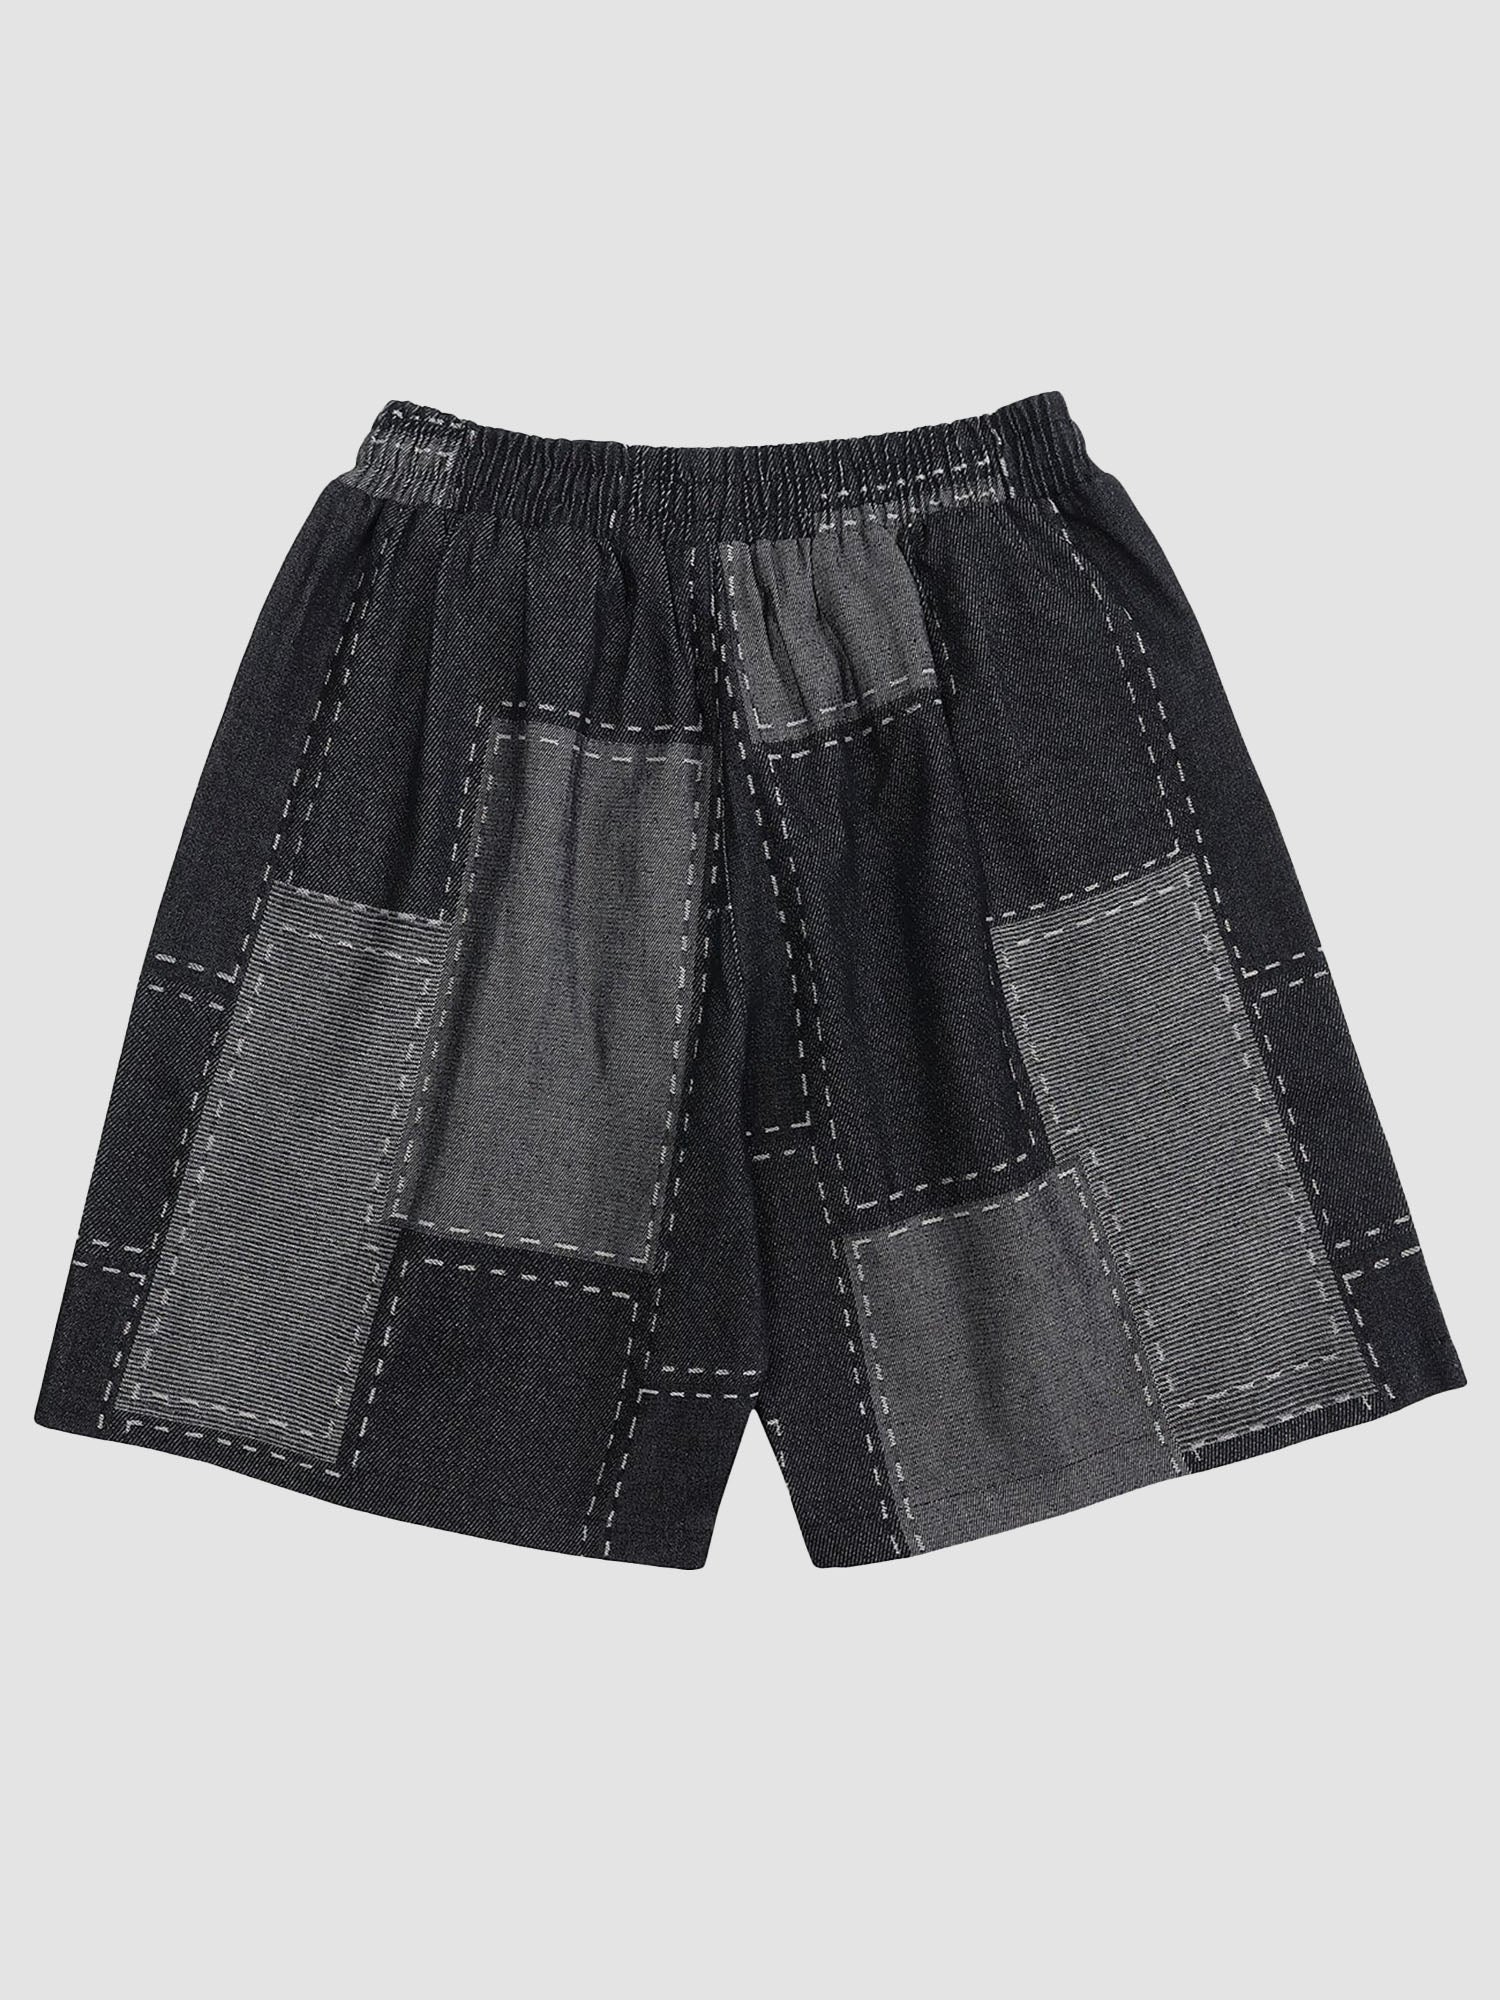 JUSTNOTAG Color Matching Denim Shorts Drawstring Waist Shorts